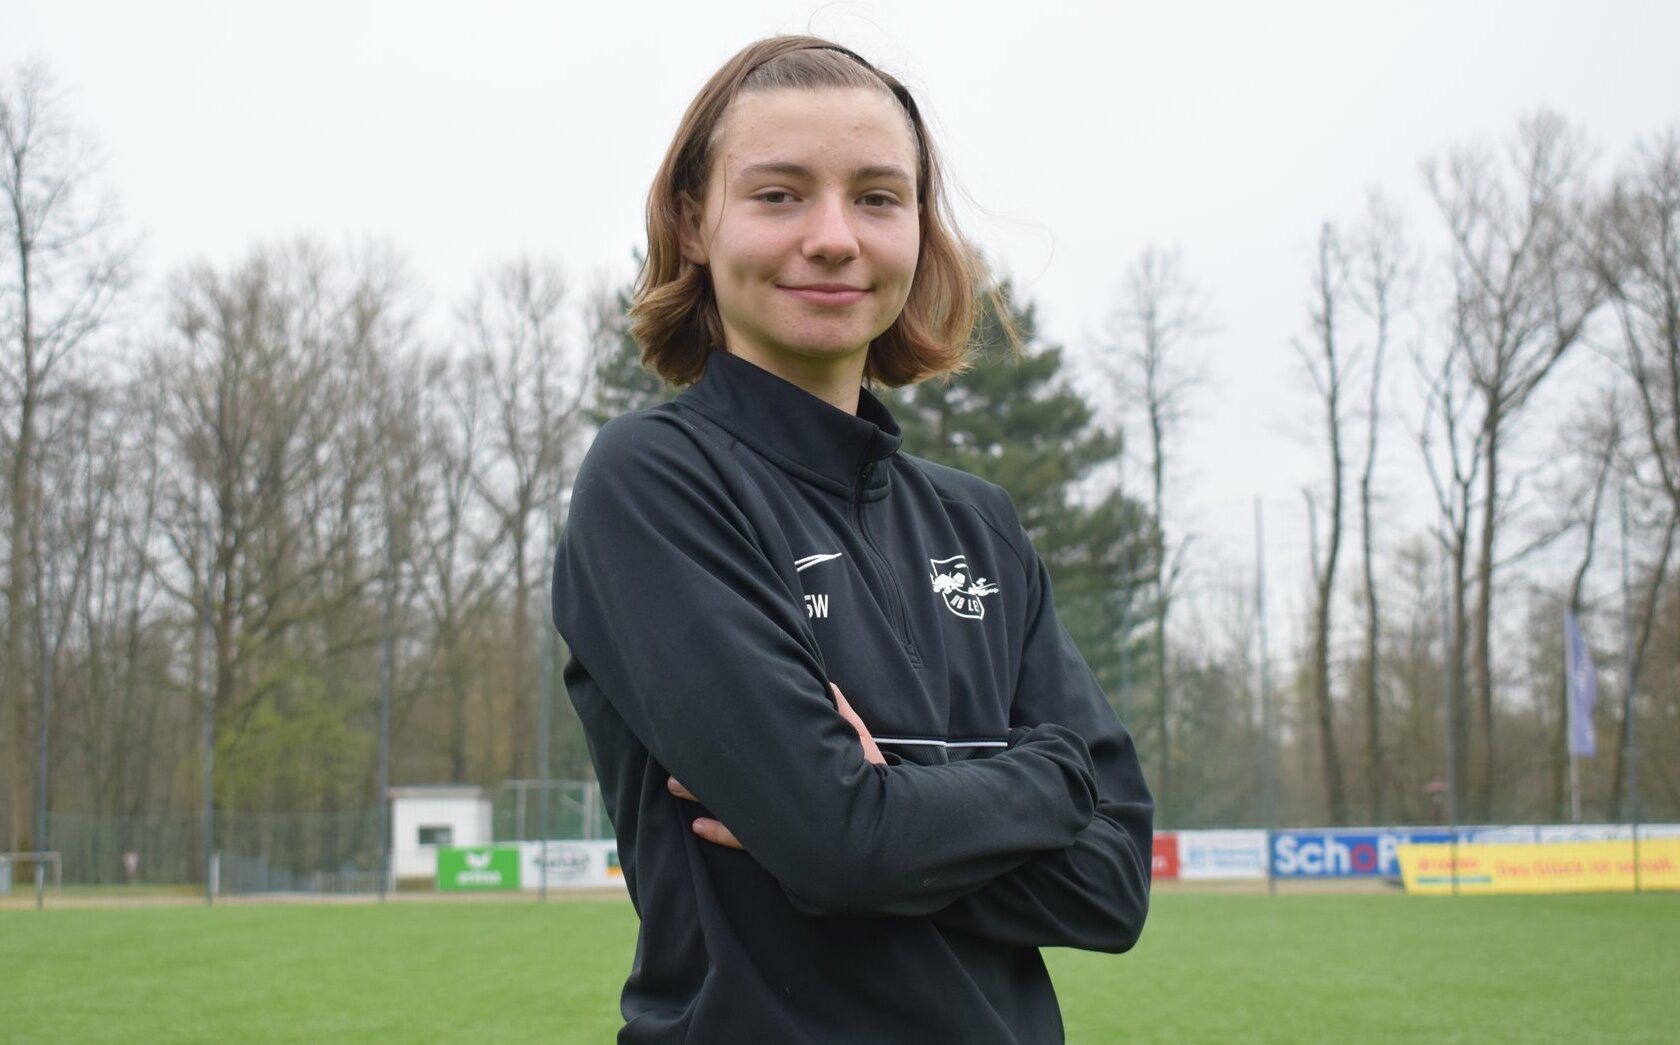 Tessa Zimmermann aus Frankenthal startete ihre spielerische Laufbahn beim Bischofswerdaer FV 08 und ging anschließend zu RB Leipzig.        Foto: Sandro Paufler